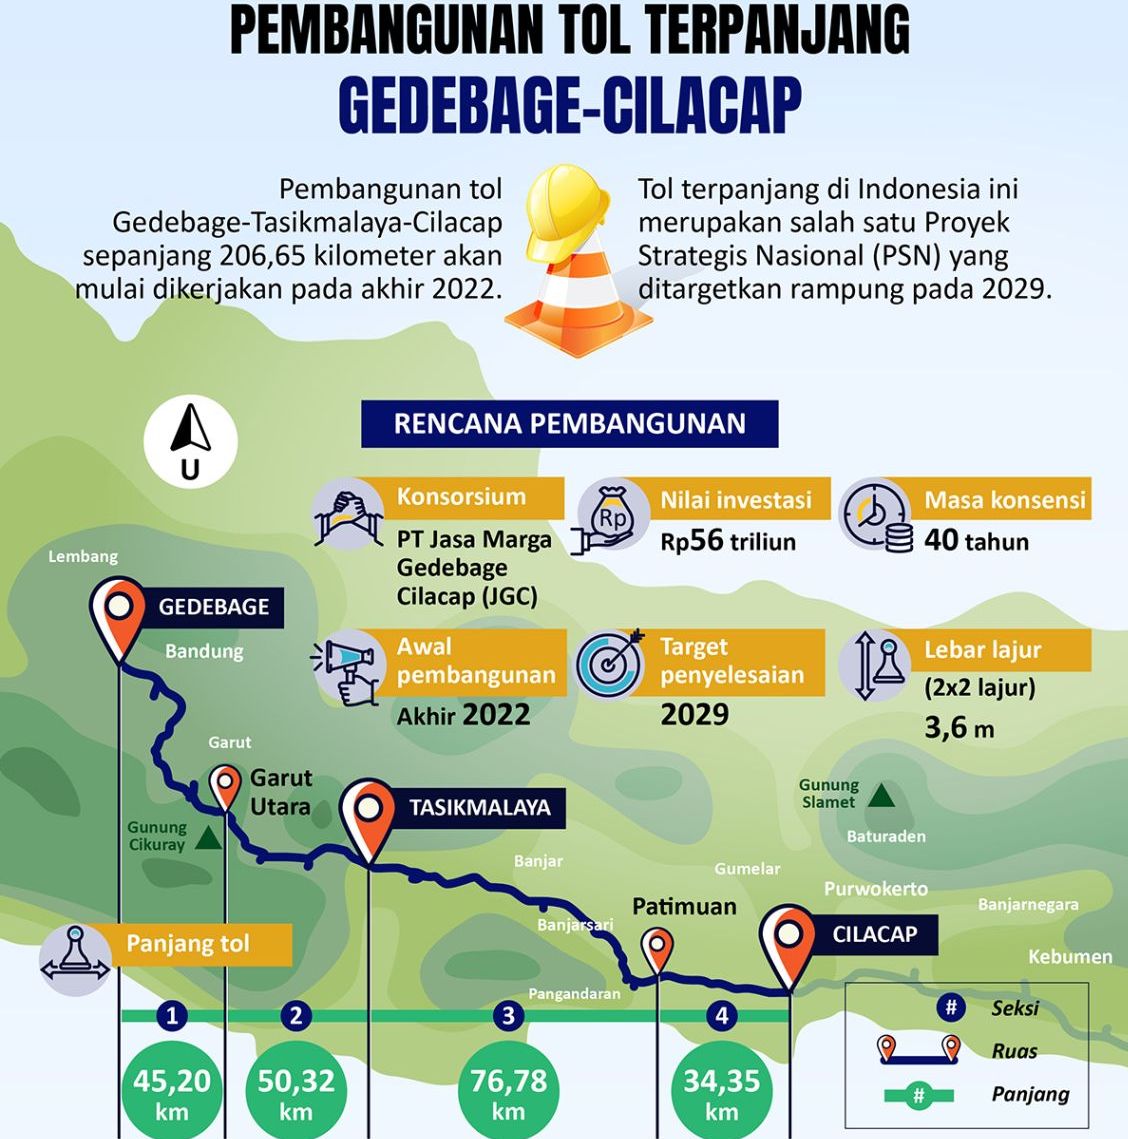 Info grafis pembangunan Tol Getaci (Gedebage - Tasikmalaya - Cilacap) lewat Garut. Ada 13 fakta menarik dengan adanya Tol Getaci  yang merupakan tol terpanjang di Indonesia.